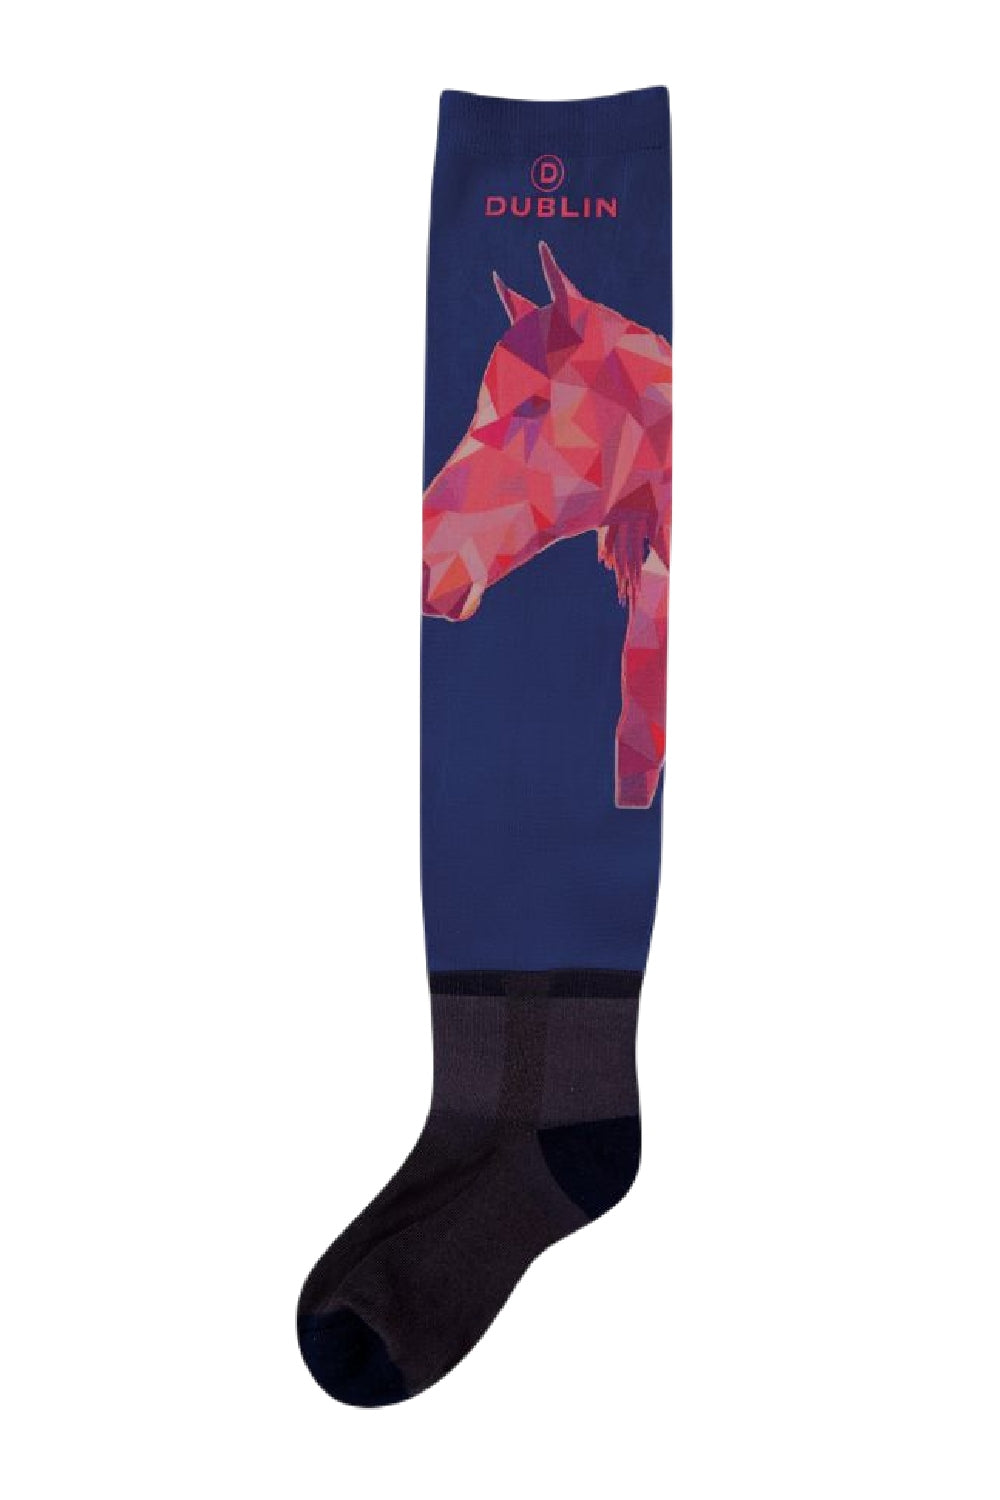 Horse Polygon Dublin Stocking Socks on White background 